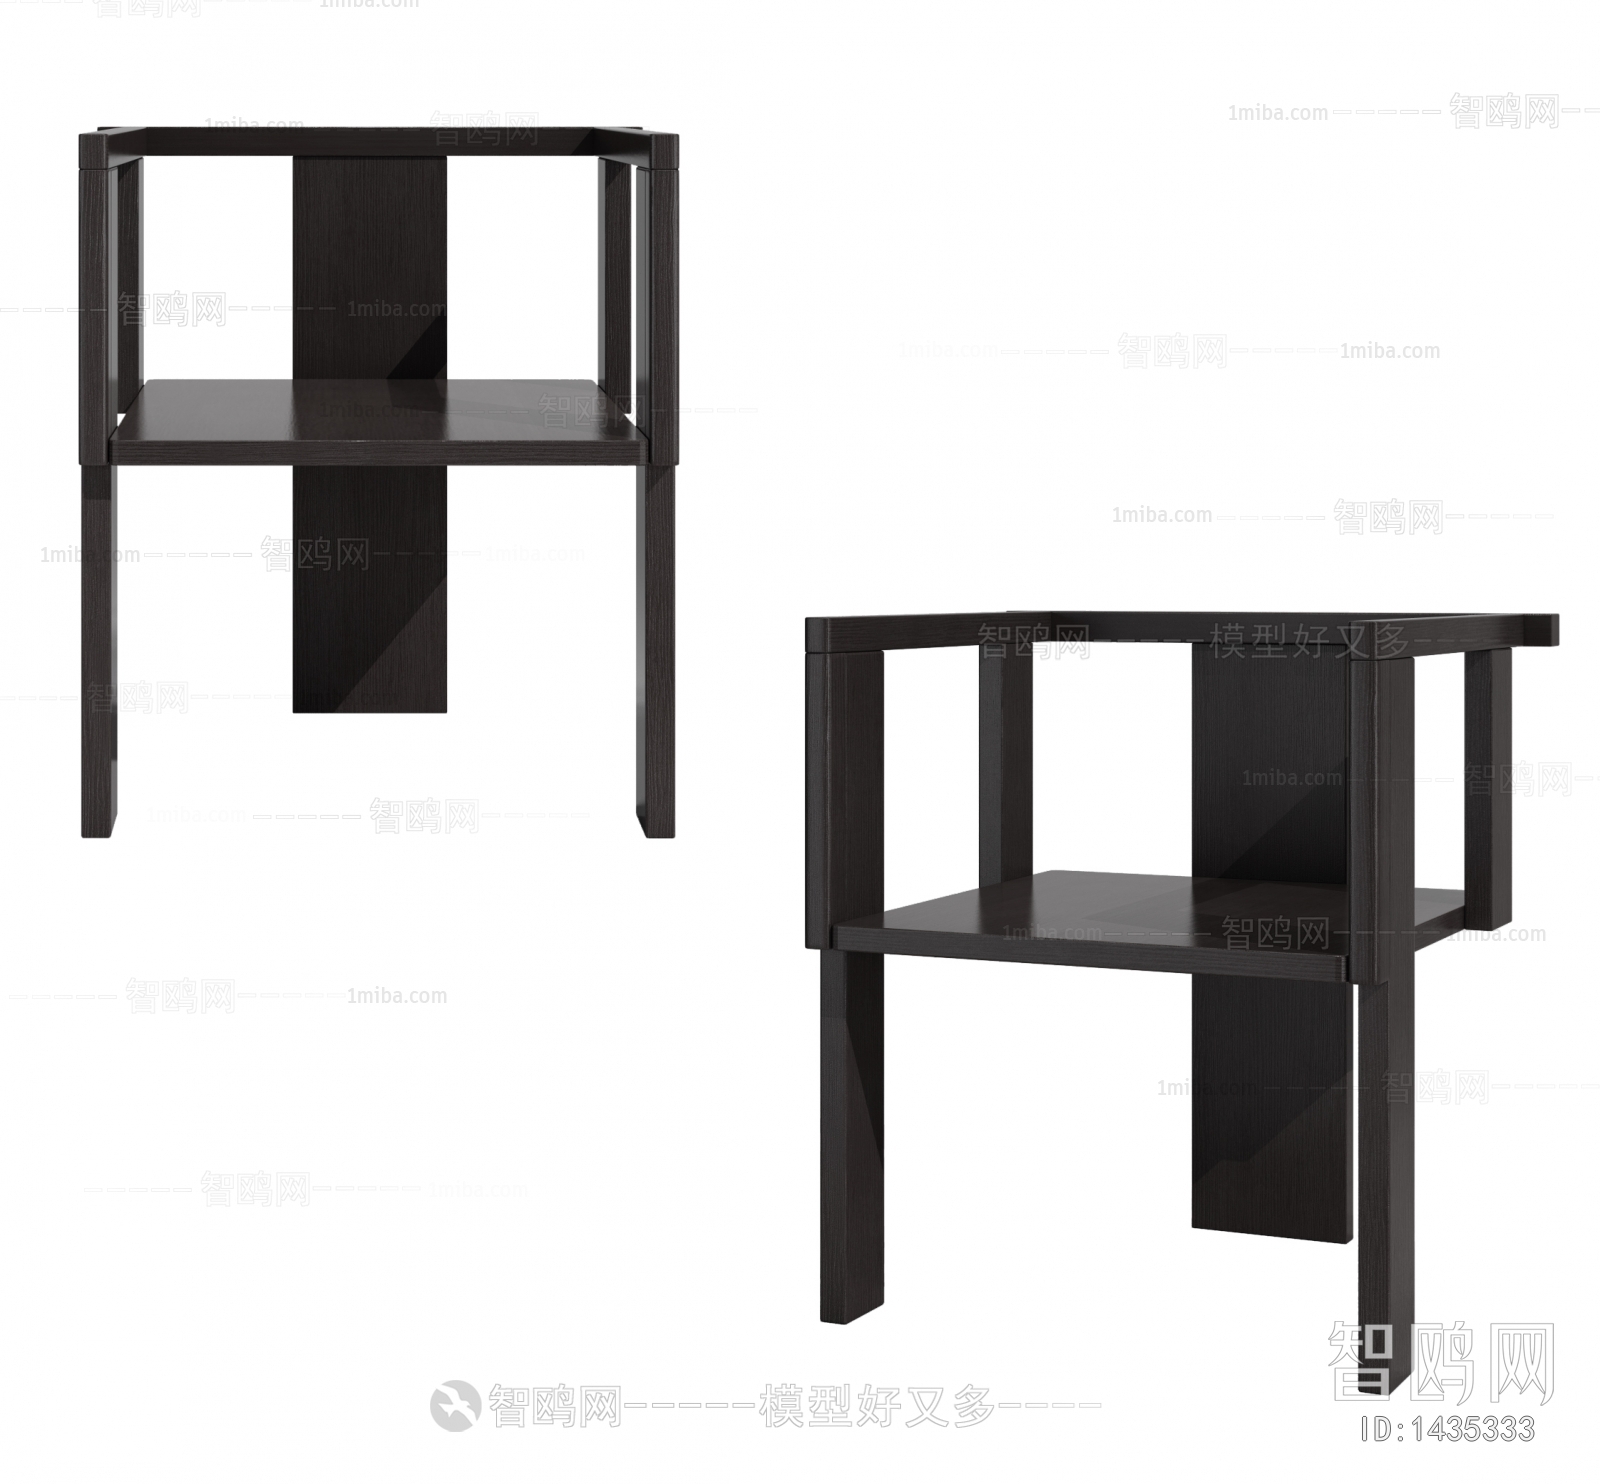 Wabi-sabi Style Single Chair